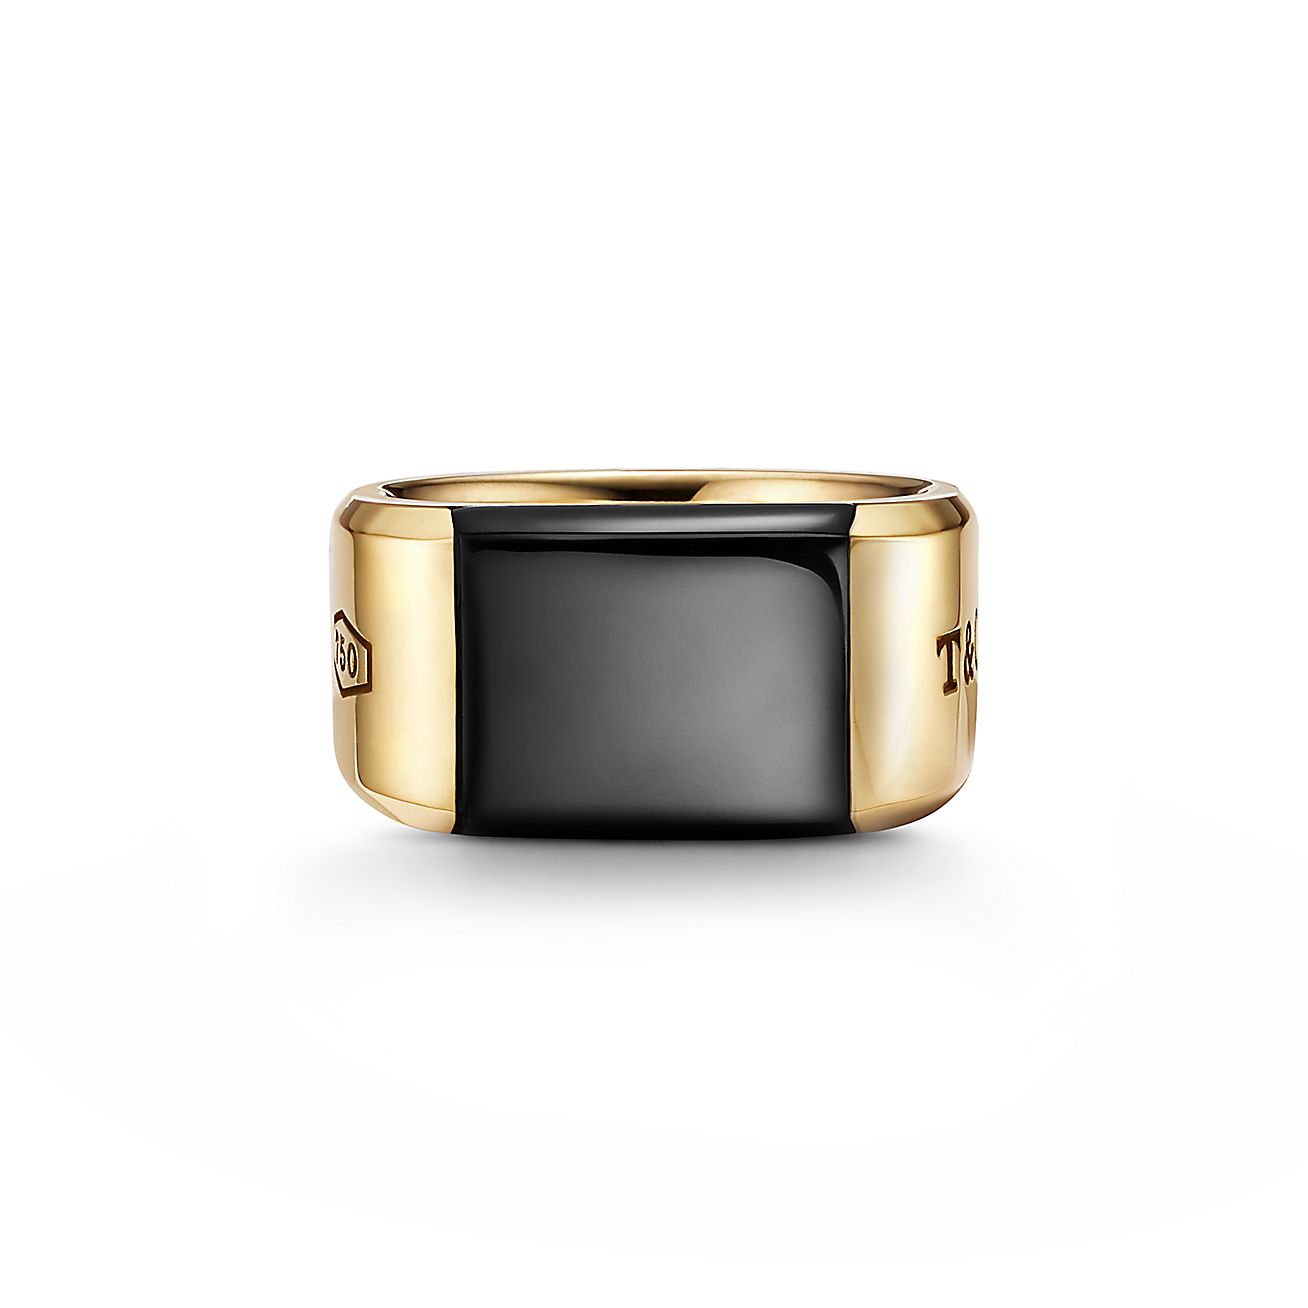 Nietje Wijzerplaat hek Tiffany 1837® Makers black onyx signet ring in 18k gold, 12 mm wide. |  Tiffany & Co.